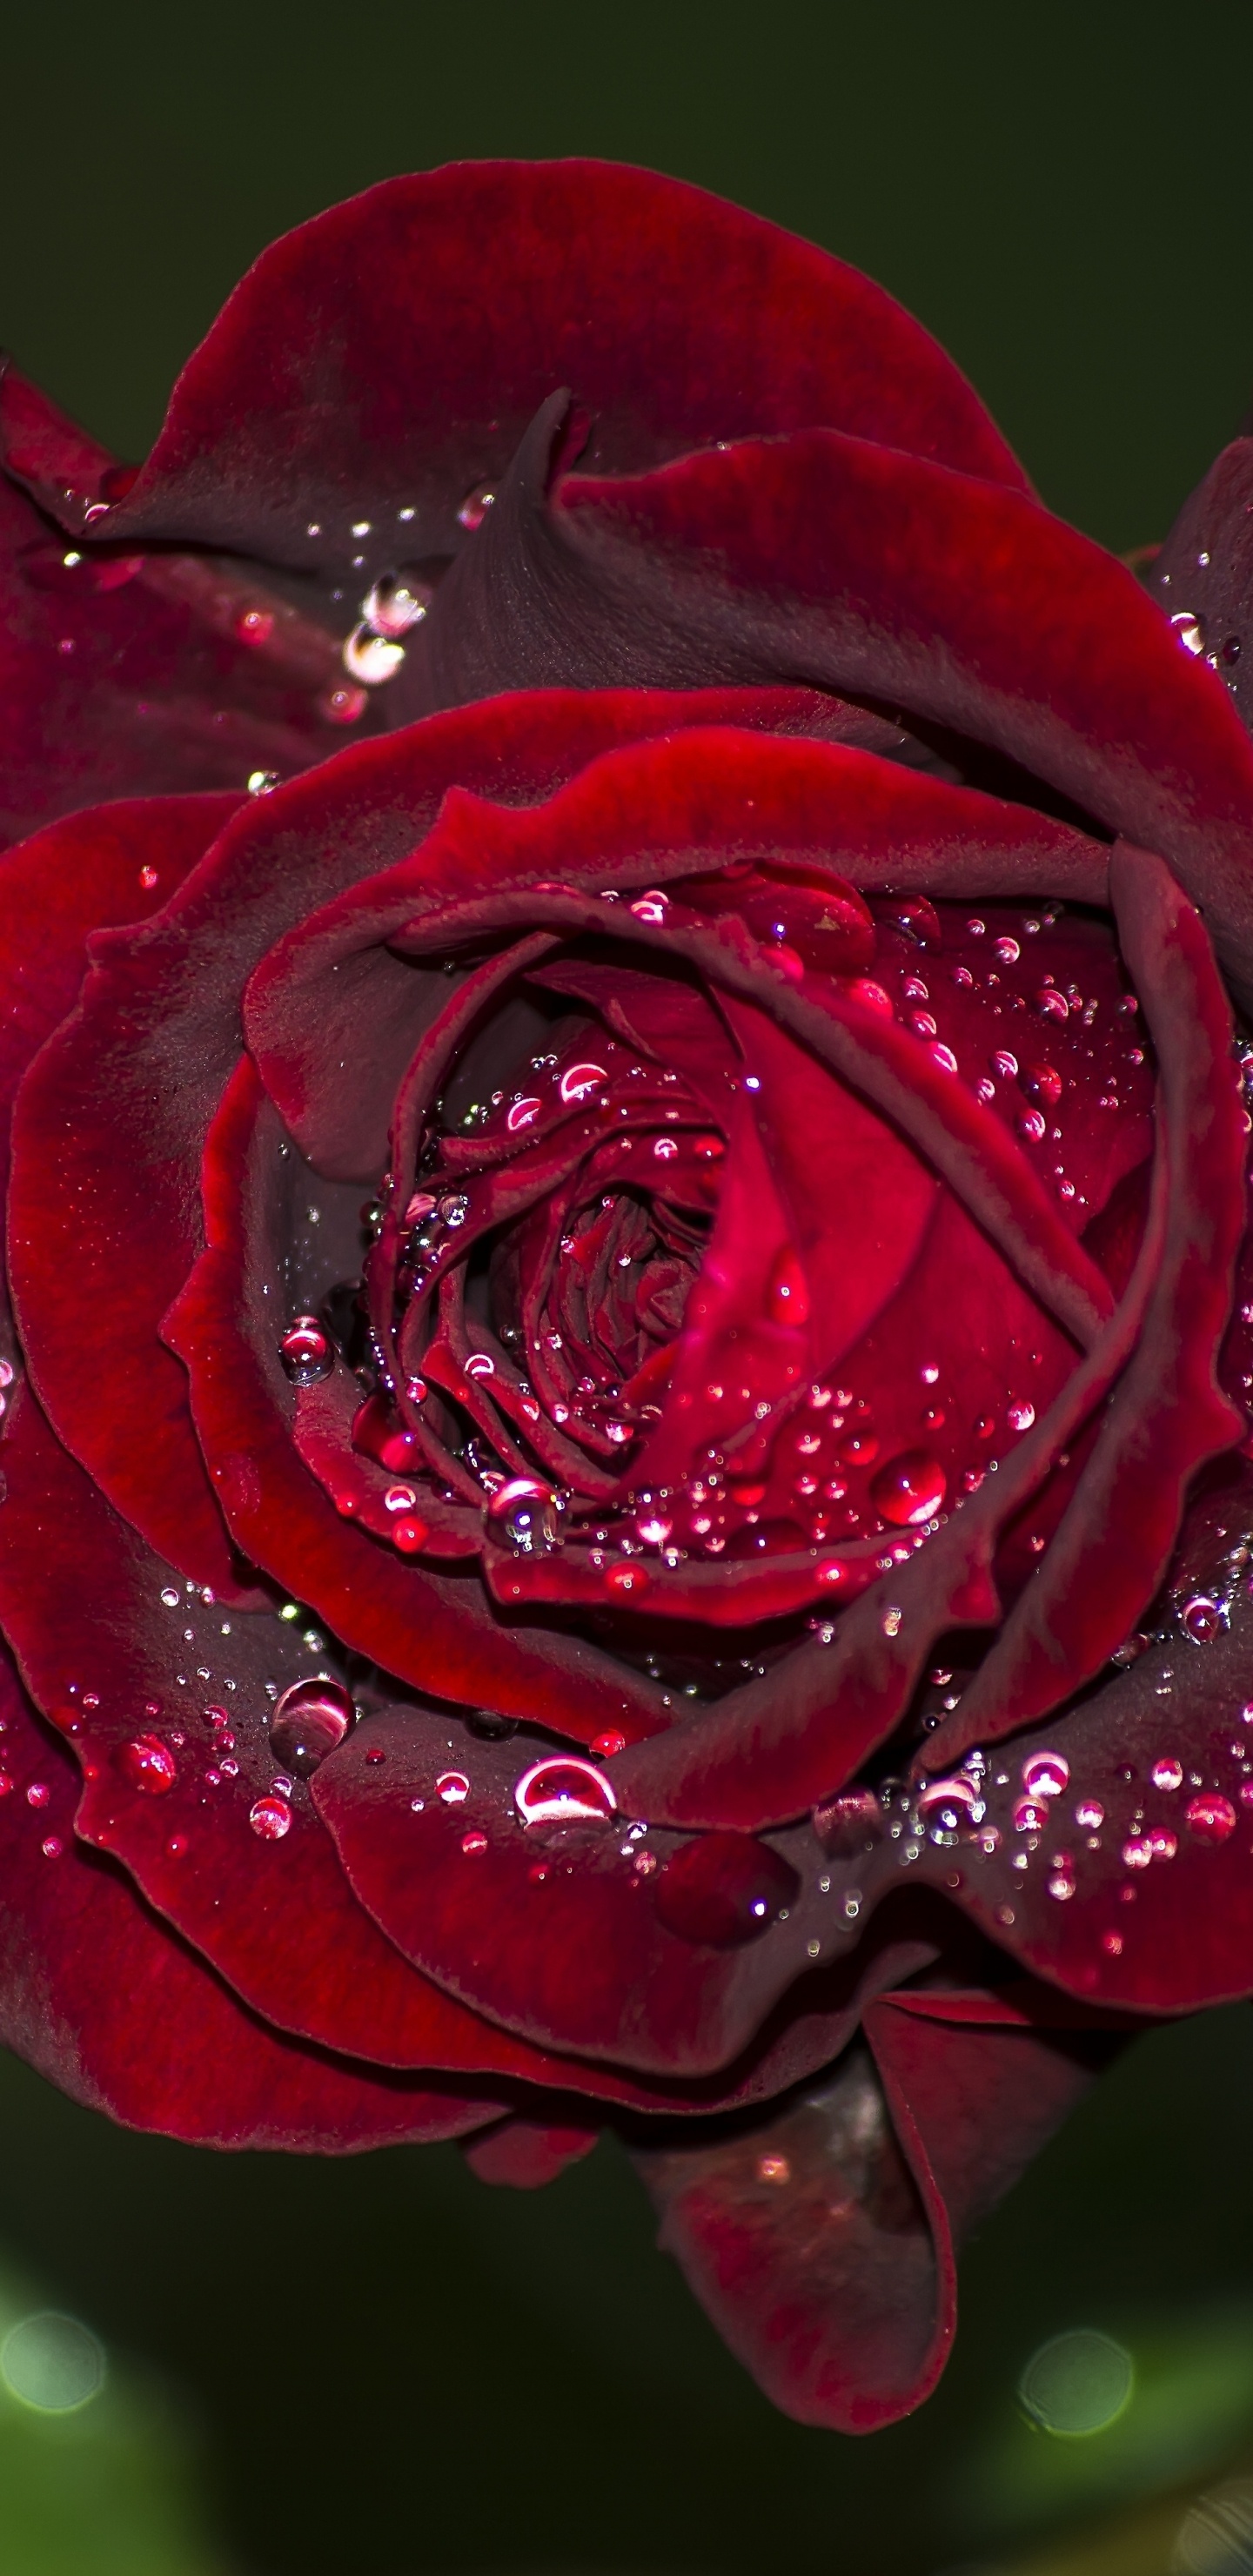 Rose Rouge en Fleurs Avec Des Gouttes de Rosée. Wallpaper in 1440x2960 Resolution